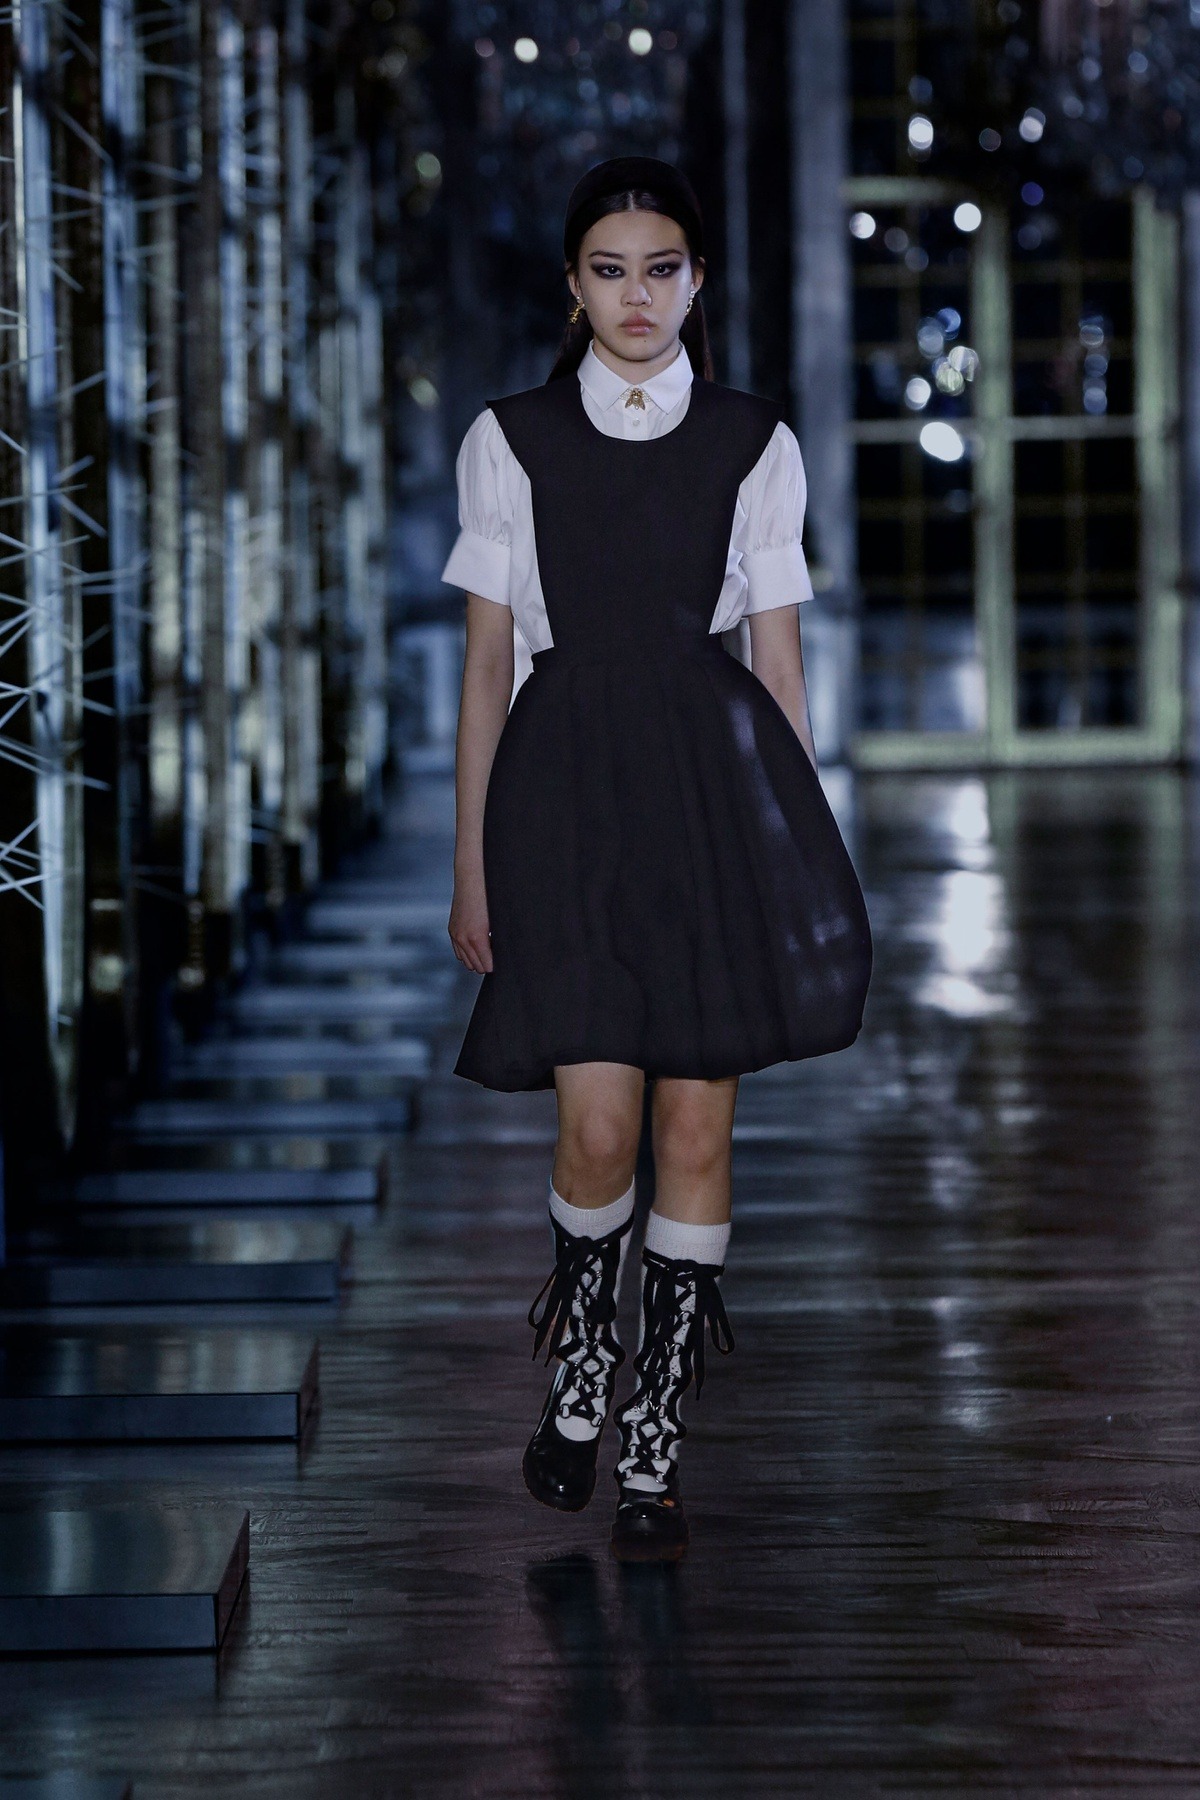 Một bộ cảnh liên tưởng đến phong cách thời trang của Jisoo BLACKPINK - Đại sứ Toàn cầu của Dior.